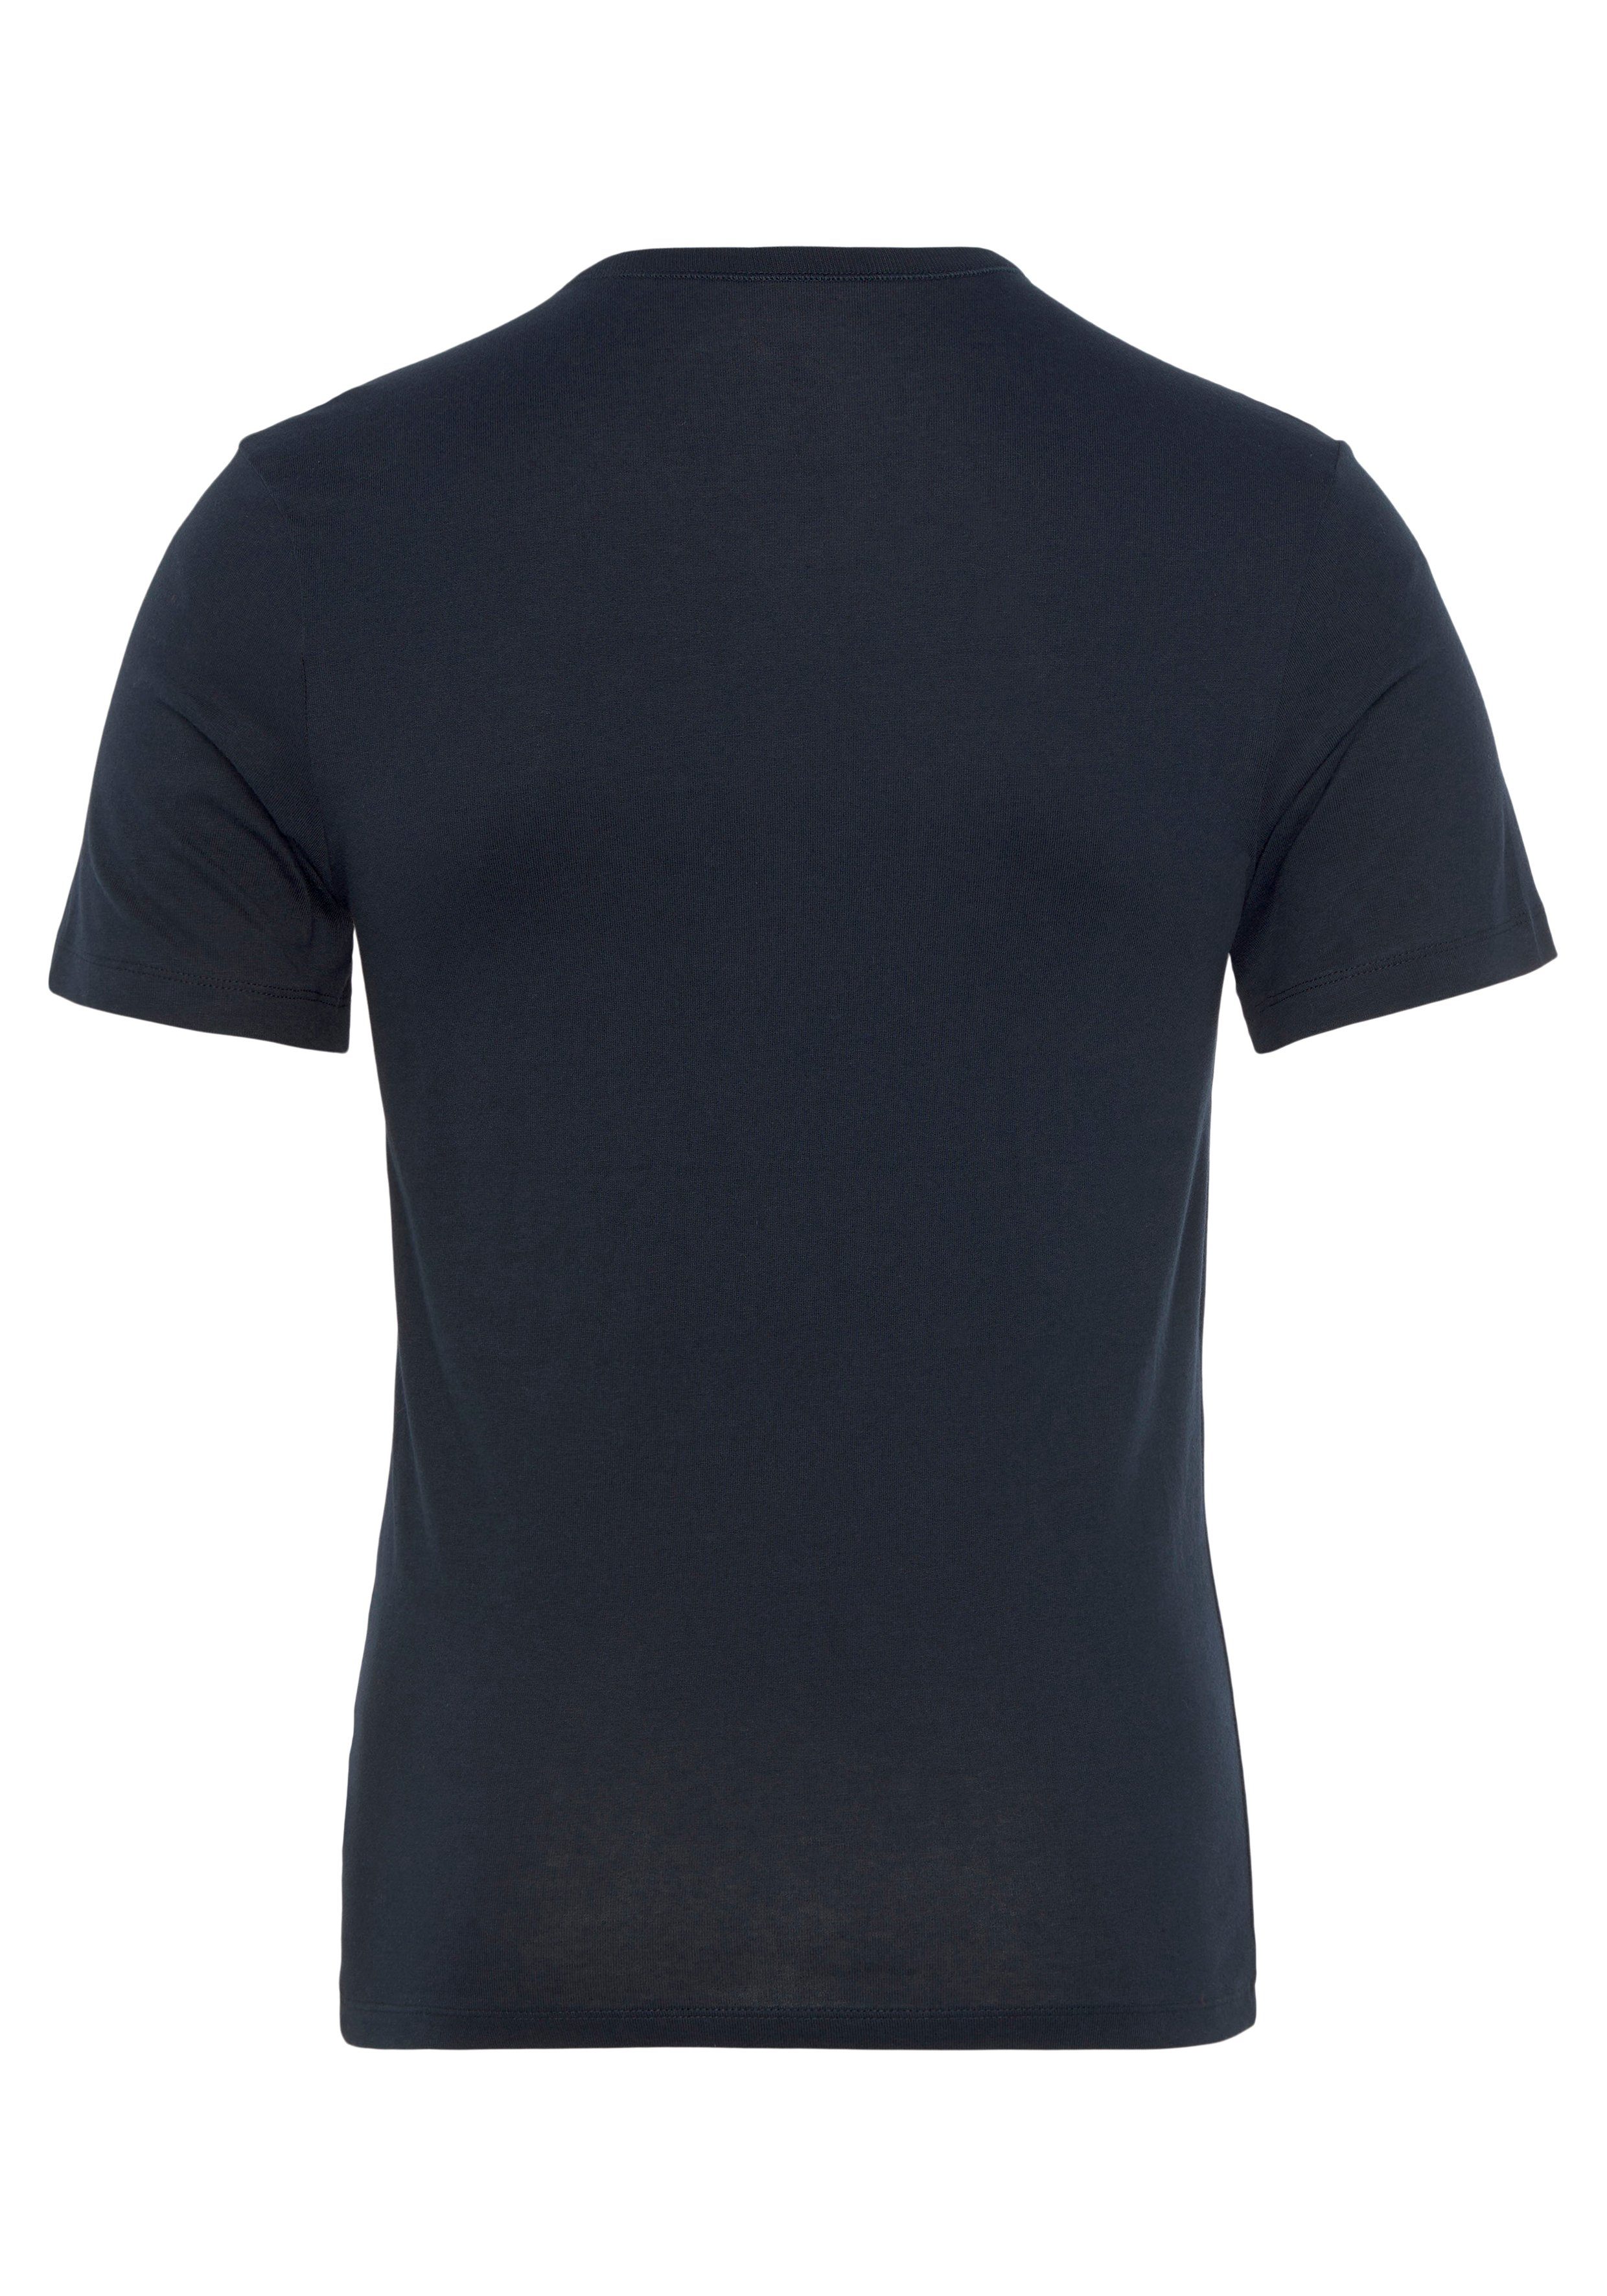 Schriftzug der BOSS schwarz/dunkelblau/weiß982 (Set, 3-tlg) auf mit BOSS Brust T-Shirt